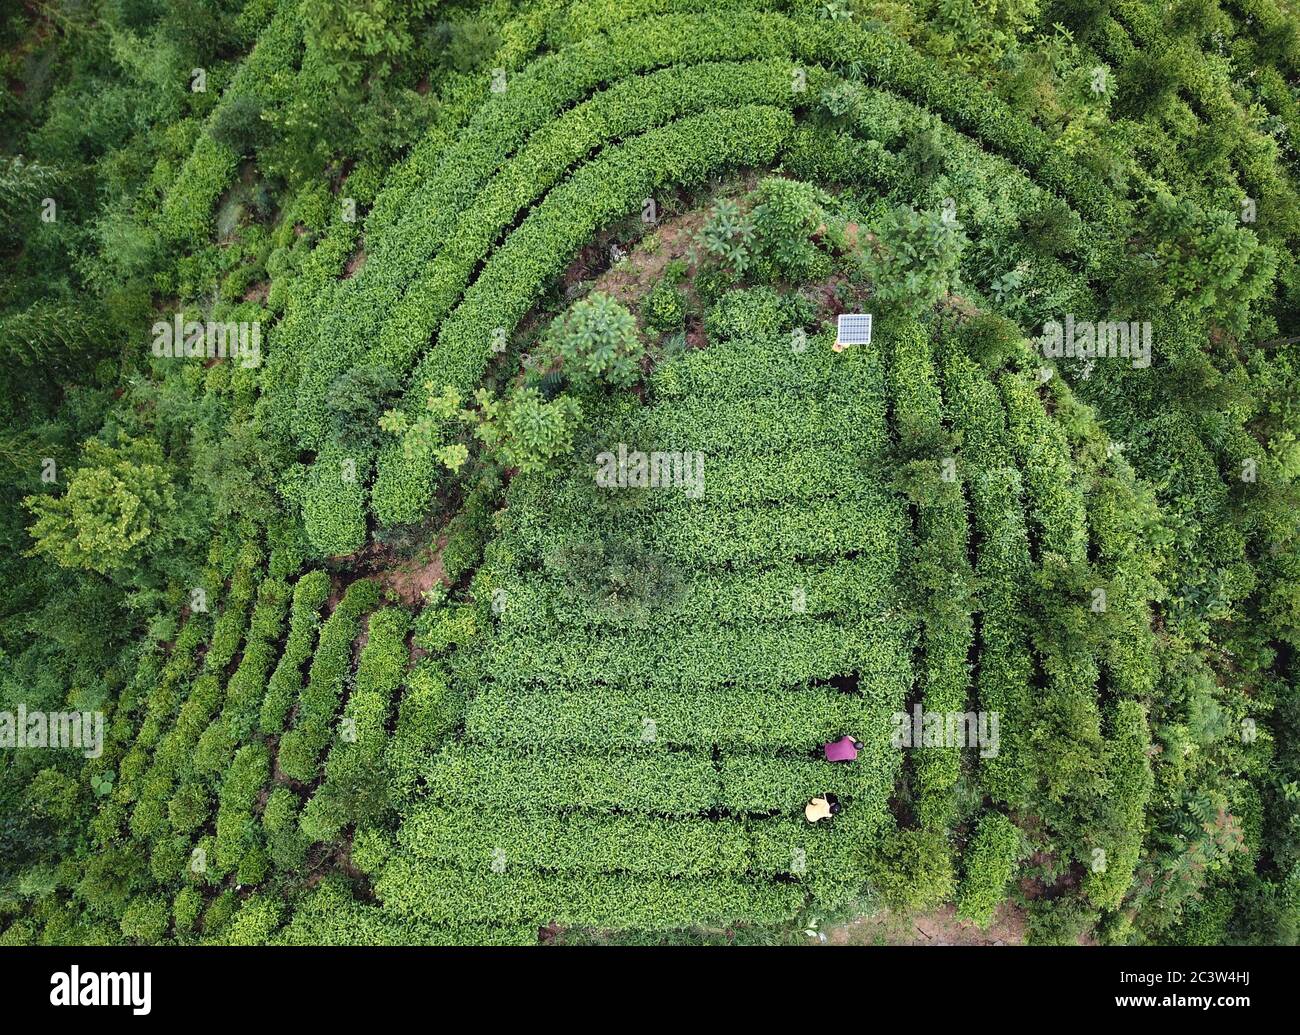 (200622) -- HEFEI, 22. Juni 2020 (Xinhua) -- Cai Qiyan hilft ihrem Vater, Unkraut aus der Teeplantage der Familie im Dorf Gaowan im Bezirk Jinzhai, ostchinesische Provinz Anhui, zu entfernen.Dies ist ein Luftfoto, das am 20. Juni 2020 aufgenommen wurde. Cai Qiyan genießt den Blick auf die fließenden Wolken von einer der Teeplantagen auf den Bergen. Aber der Spaß war auch ein Luxus für den 15-Jährigen, der mit angeborener Skoliose diagnostiziert wurde. Von Anfang an hatte Qiyan es extrem schwierig gefunden, ihre Wirbelsäule aufrecht zu halten. In der Tiefe des Dabie-Gebirges musste Qiyan zwei Stunden auf dem Weg zur Schule und BA verbringen Stockfoto